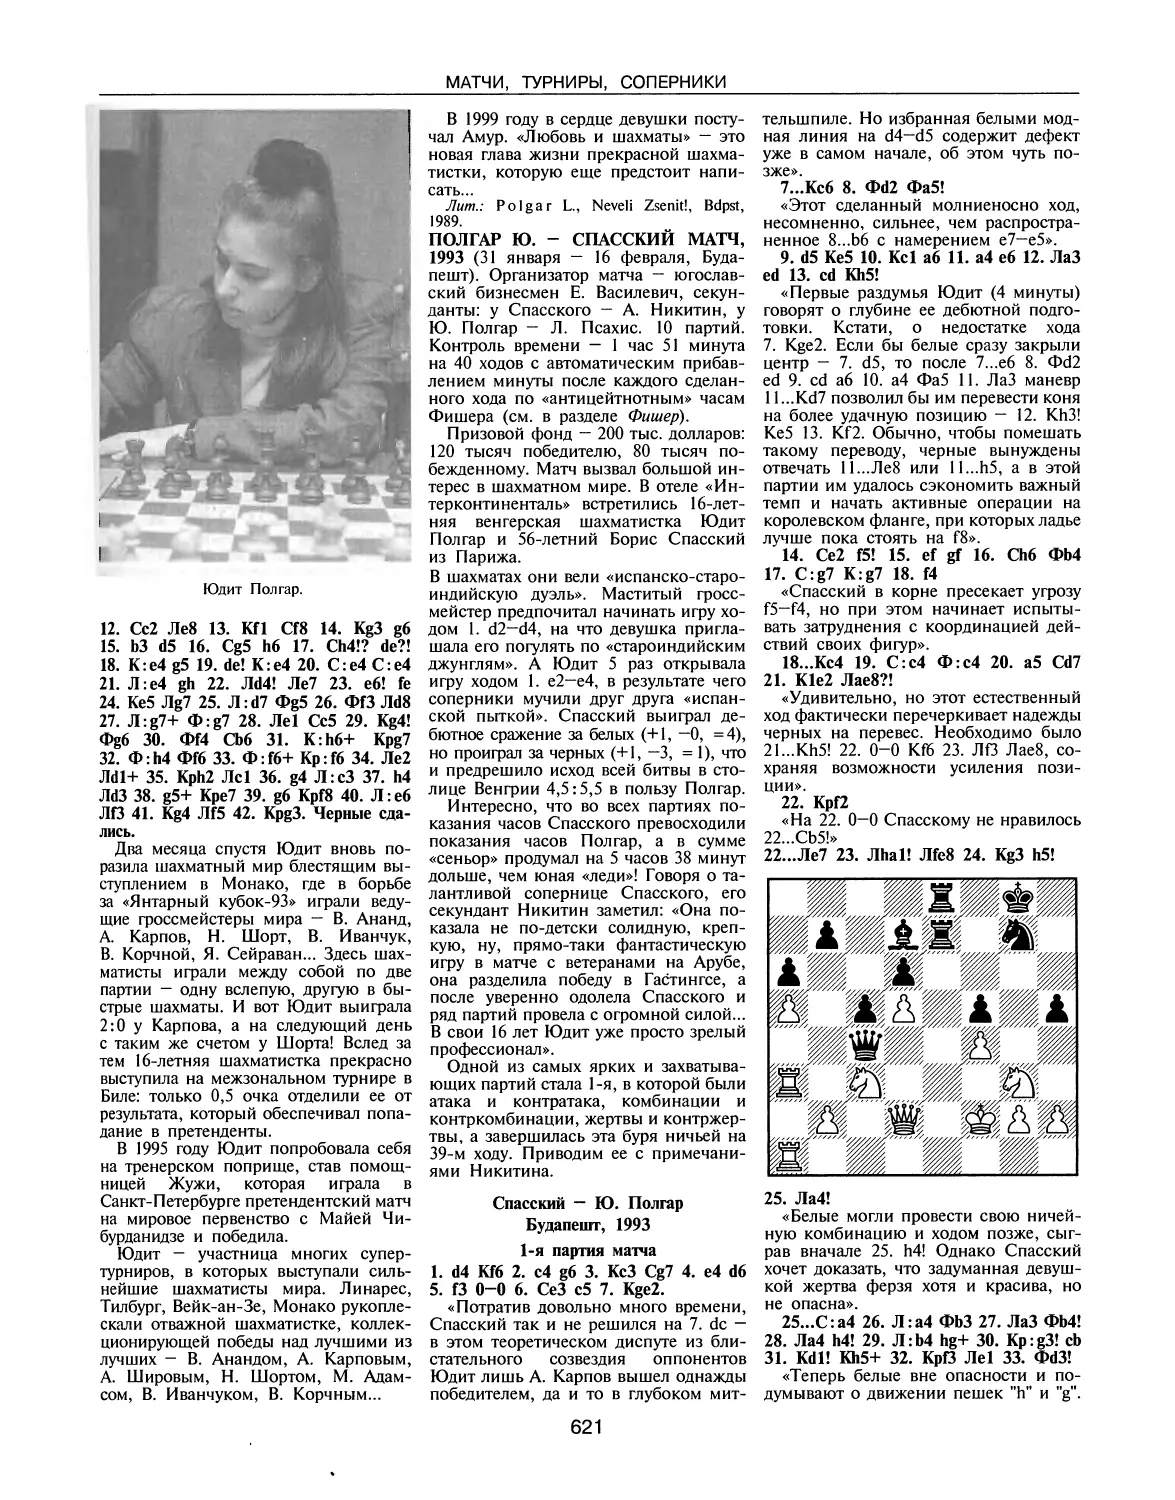 Полгар Ю. — Спасский матч, 1993